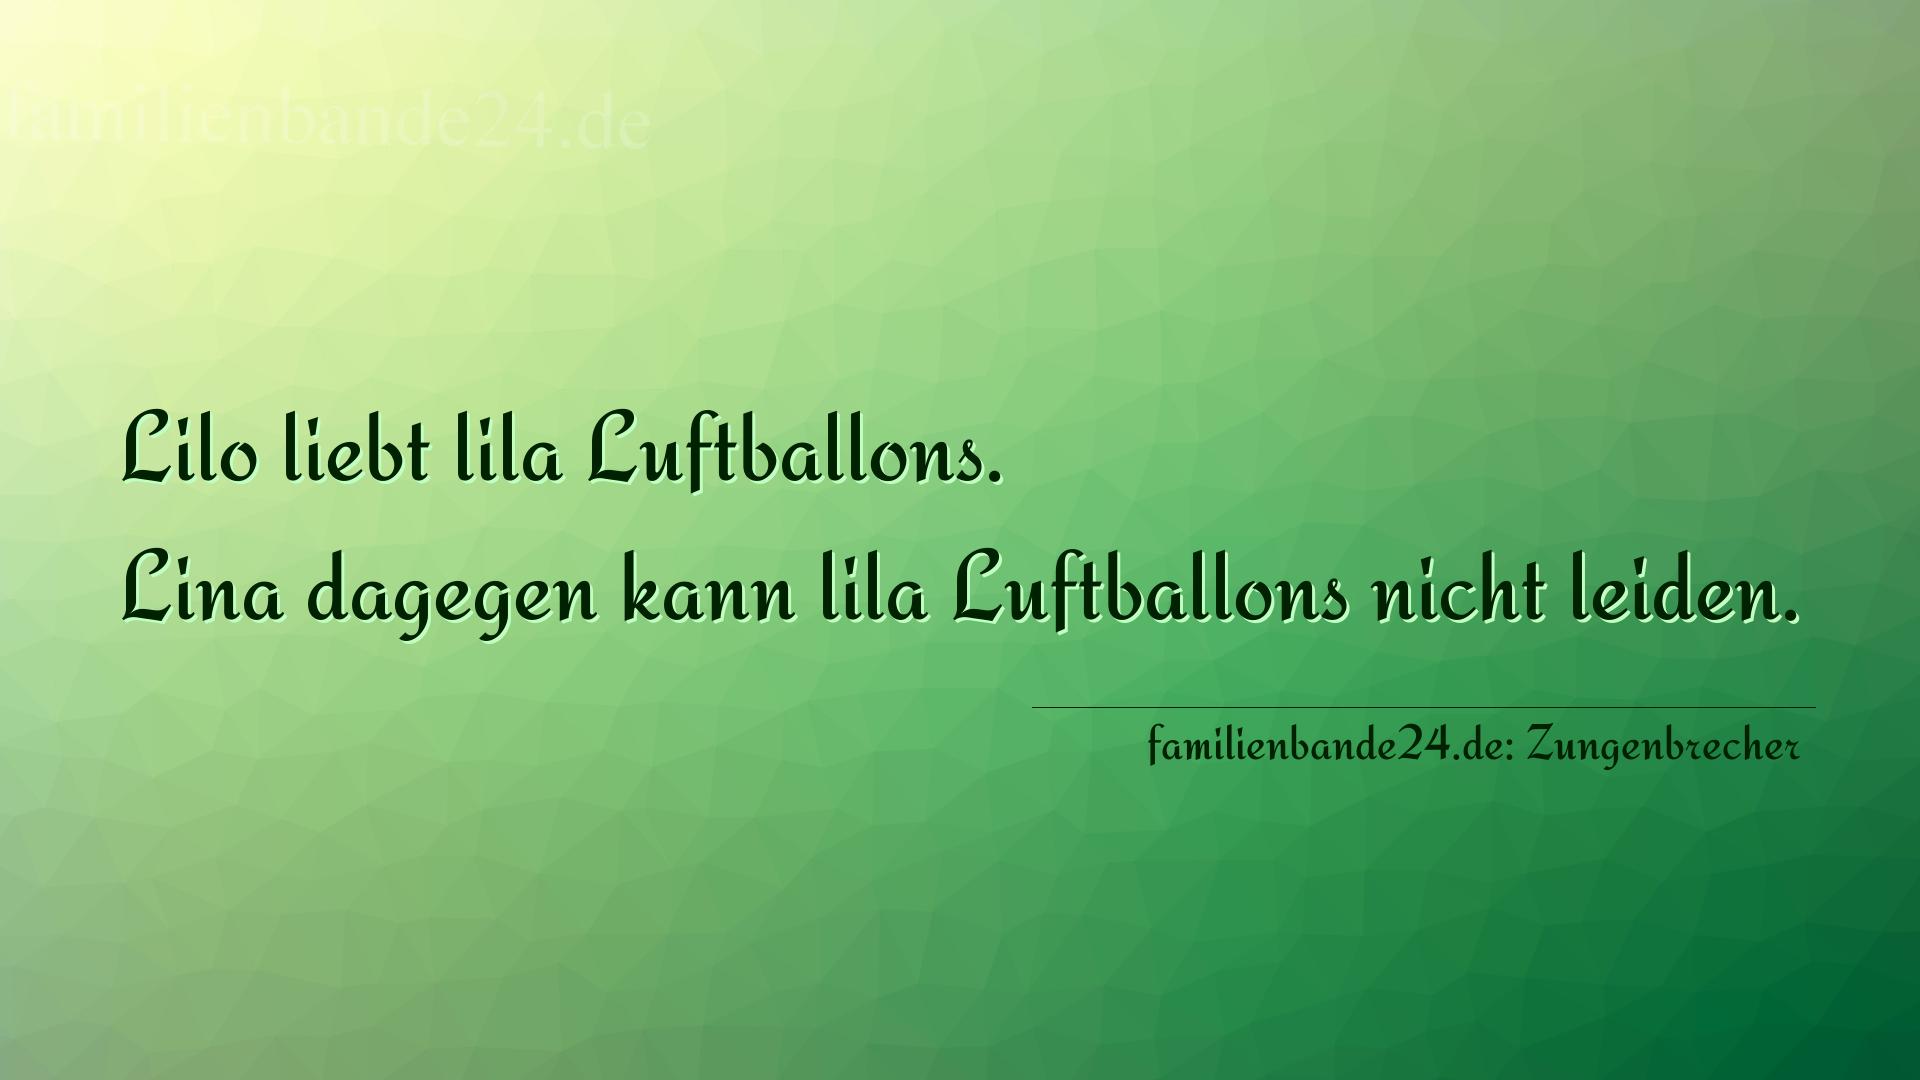 Zungenbrecher Nummer 778: Lilo liebt lila Luftballons. Lina dagegen kann lila Luftba [...]